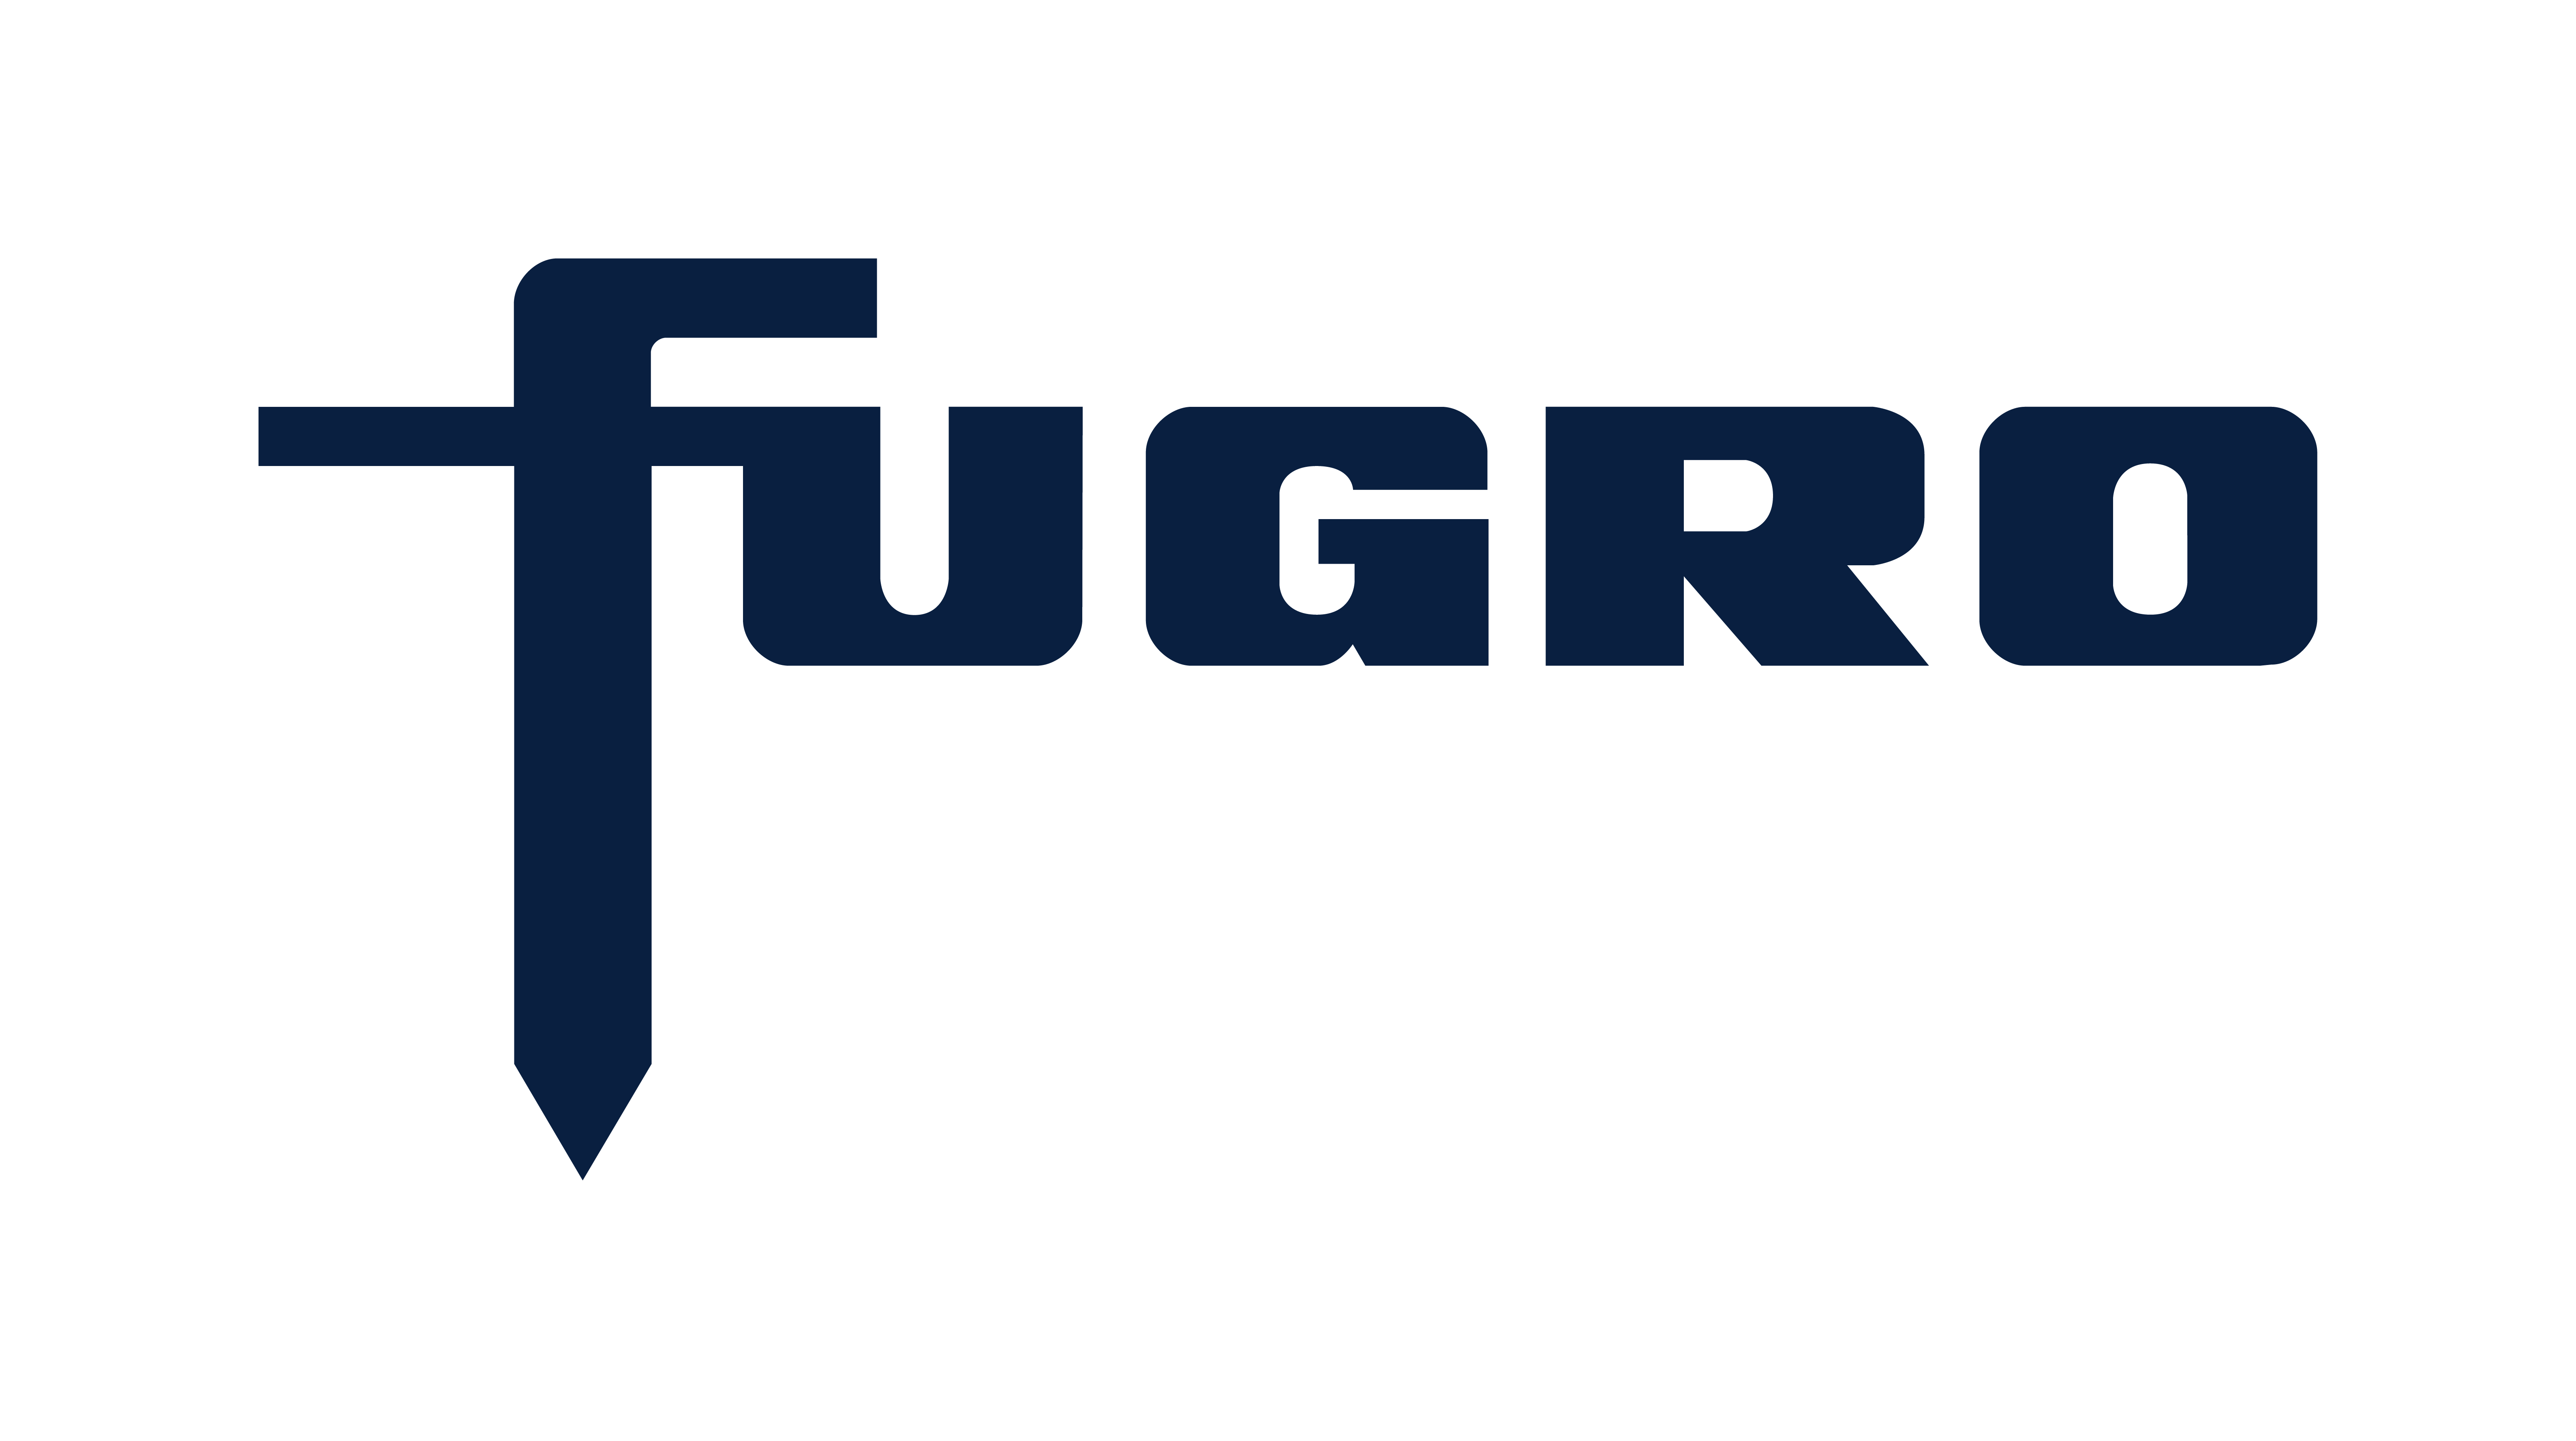 Fugro-logo